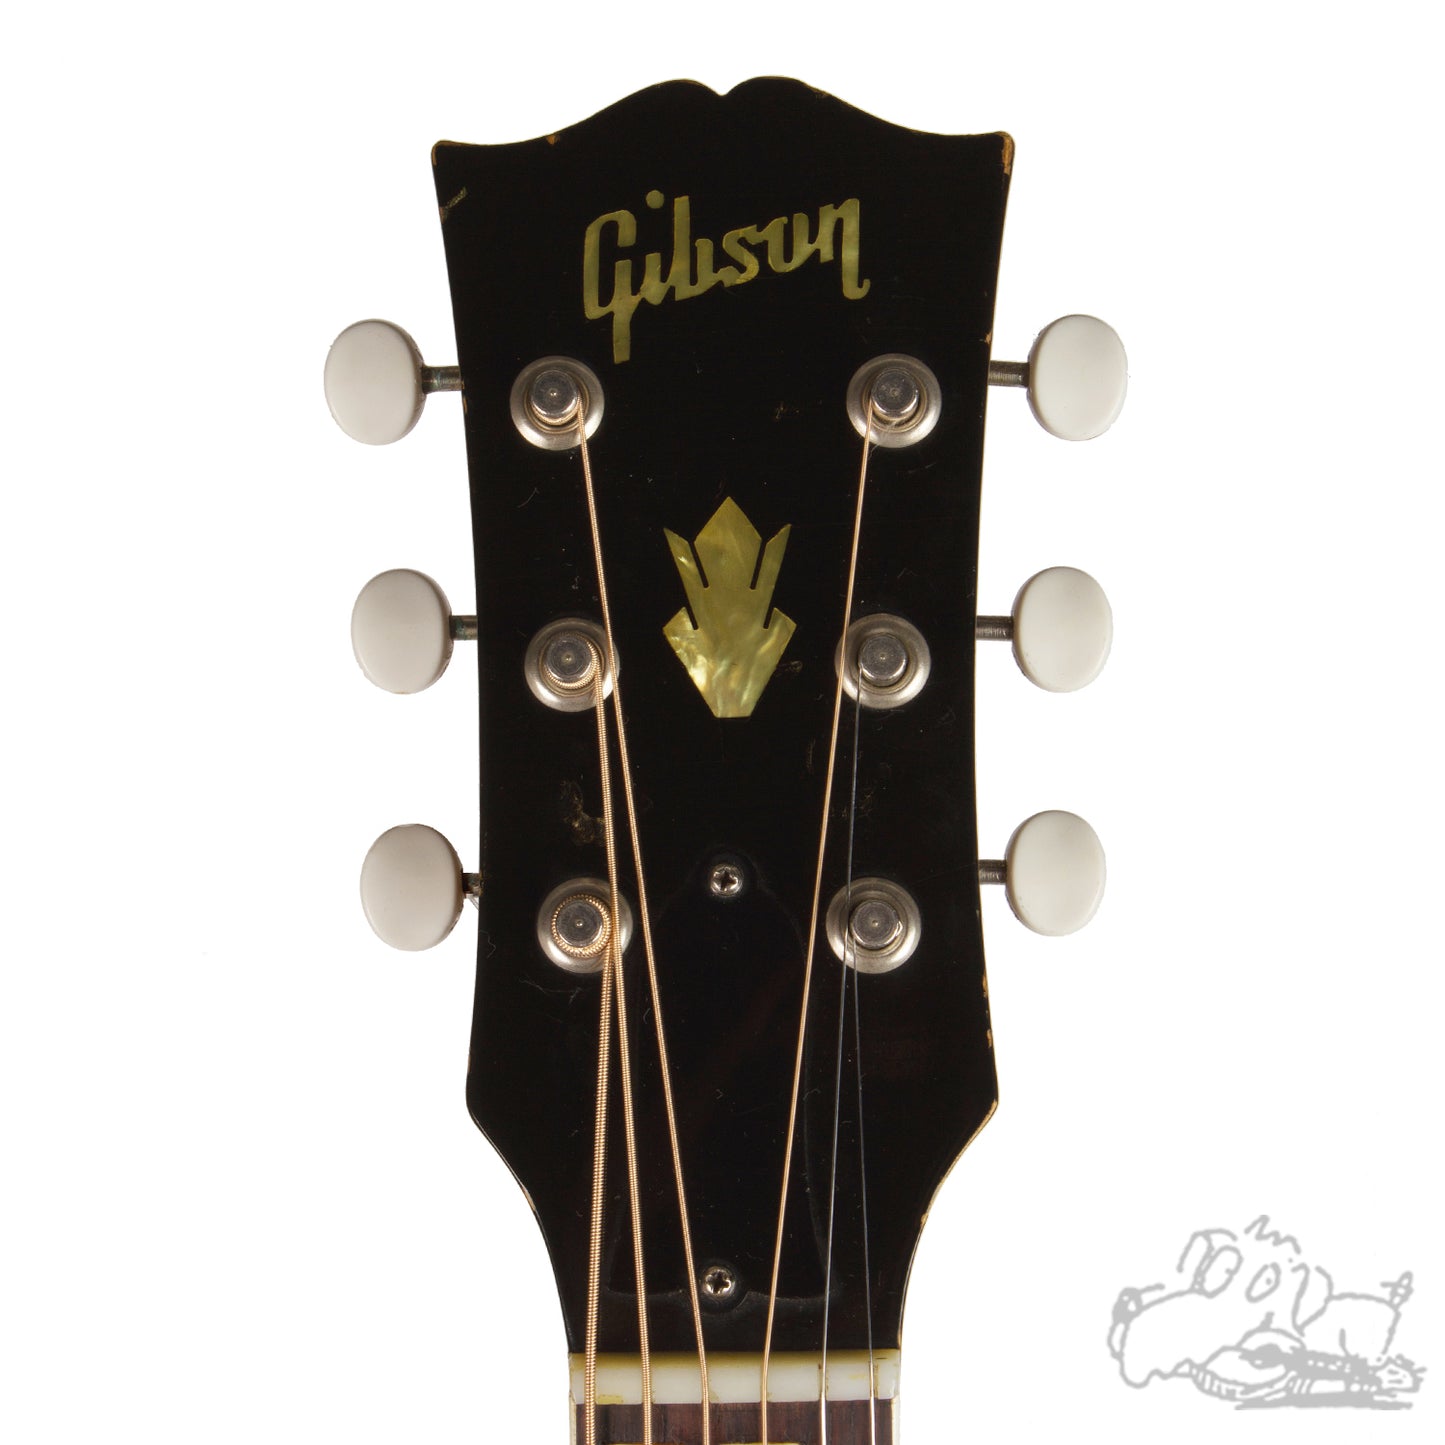 1957 Gibson Southern Jumbo